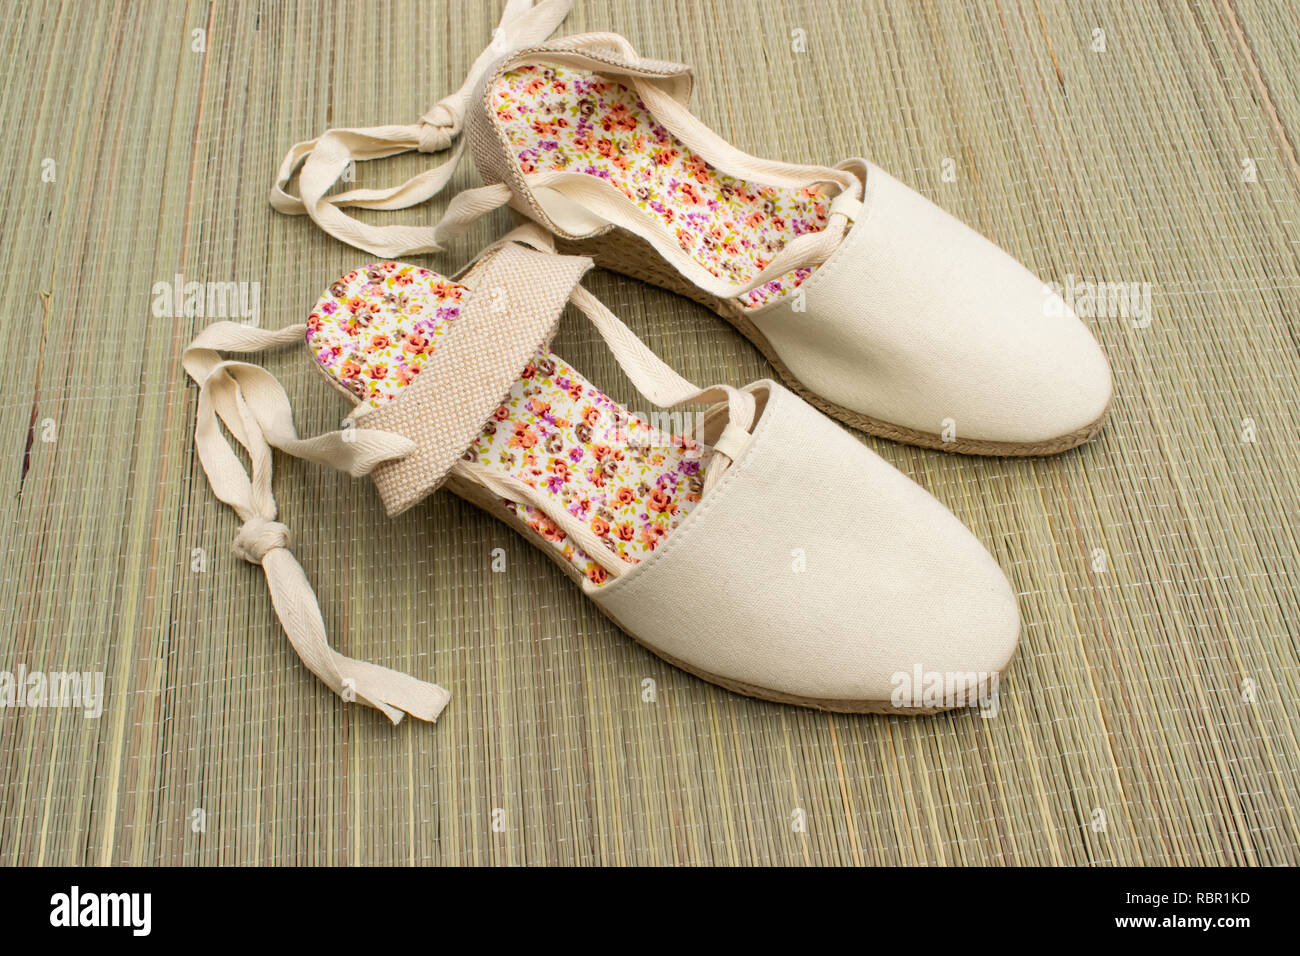 Sandales d'été jolie,style vintage chaussures espadrilles isolé sur un tapis de plage en été. Banque D'Images